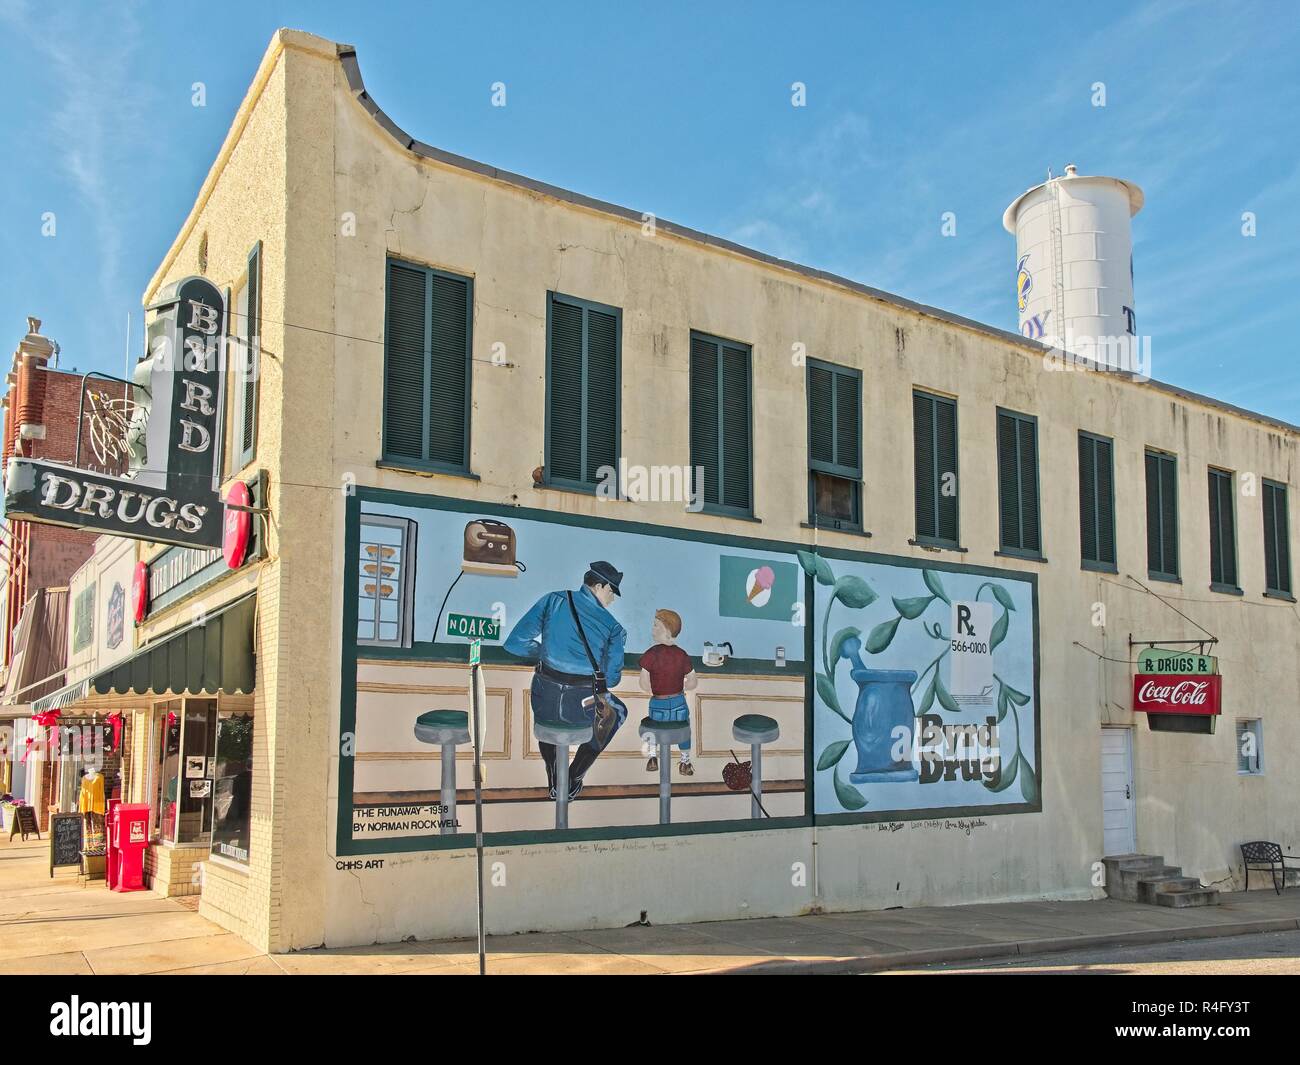 Médicaments Byrd une petite ville drug store et pharmacie à Troy, Michigan, USA, dispose d'une grande fresque peinte sur l'extérieur. Banque D'Images